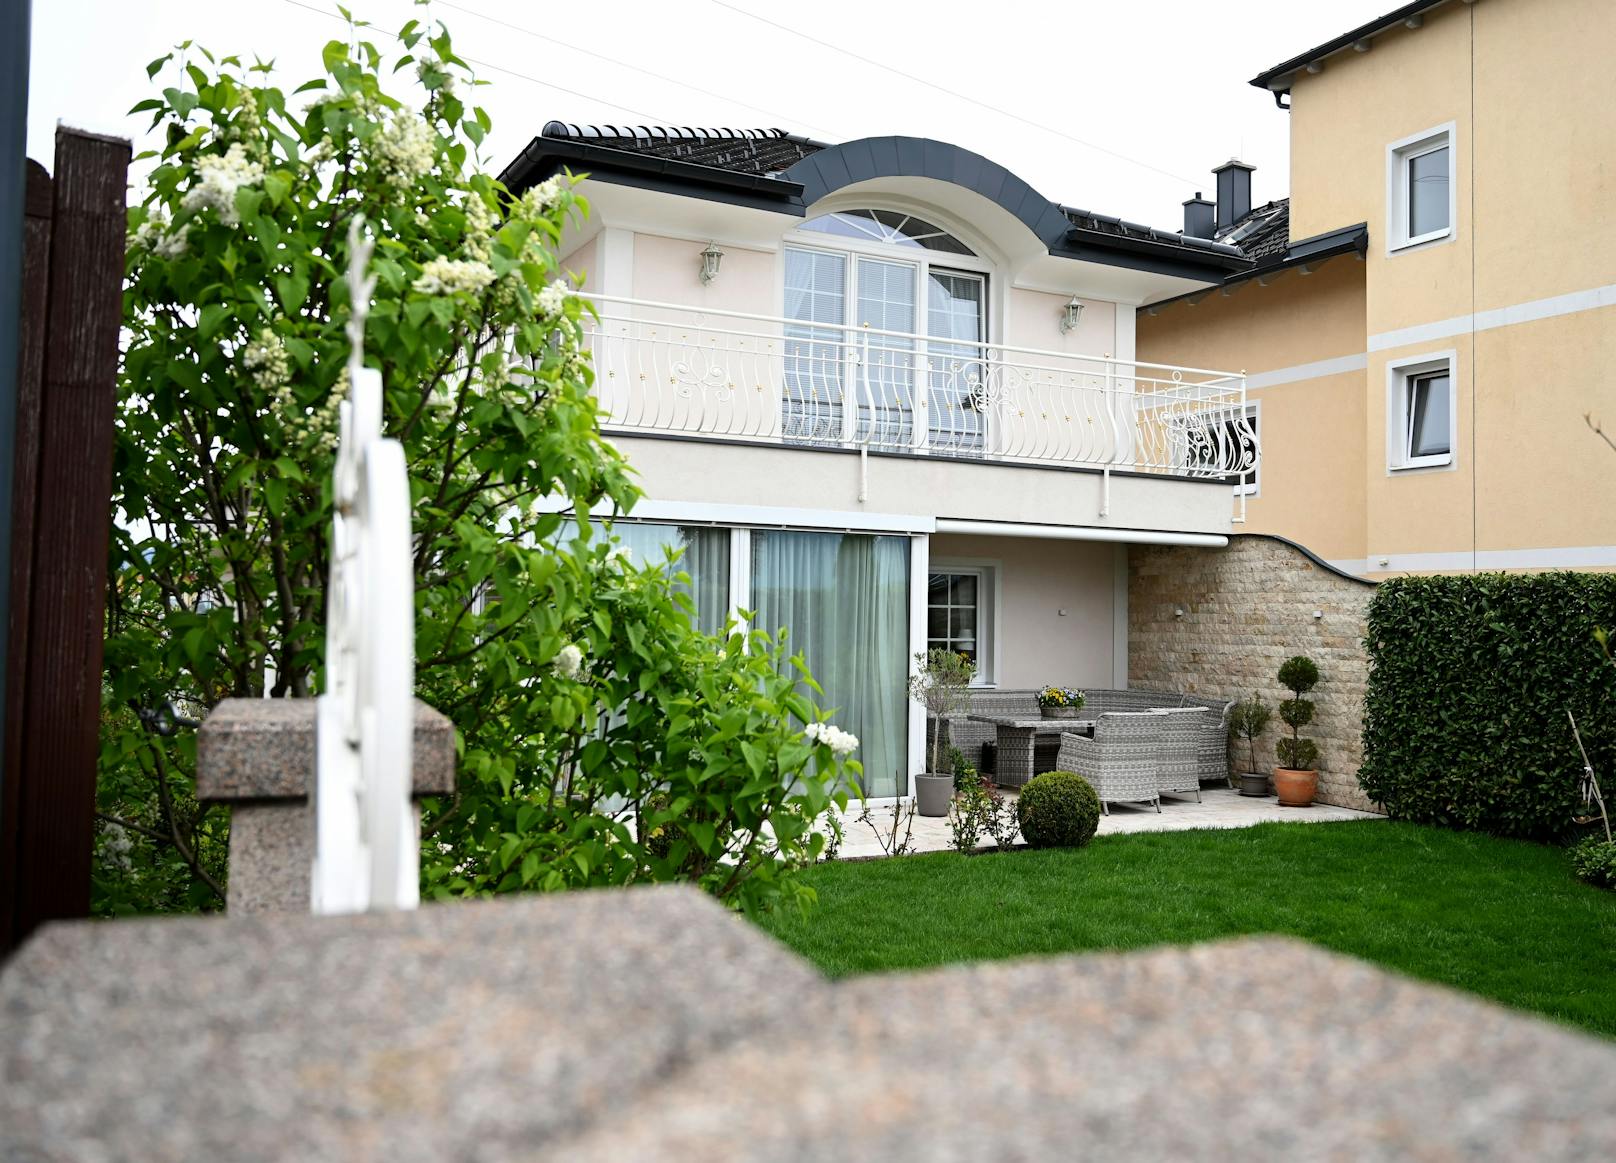 In einem Einfamilienhaus in Wals-Siezenheim (Salzburg) sind in der Nacht auf Donnerstag zwei Frauen erschossen worden. Der mutmaßliche Täter (51) stellte sich selbst.